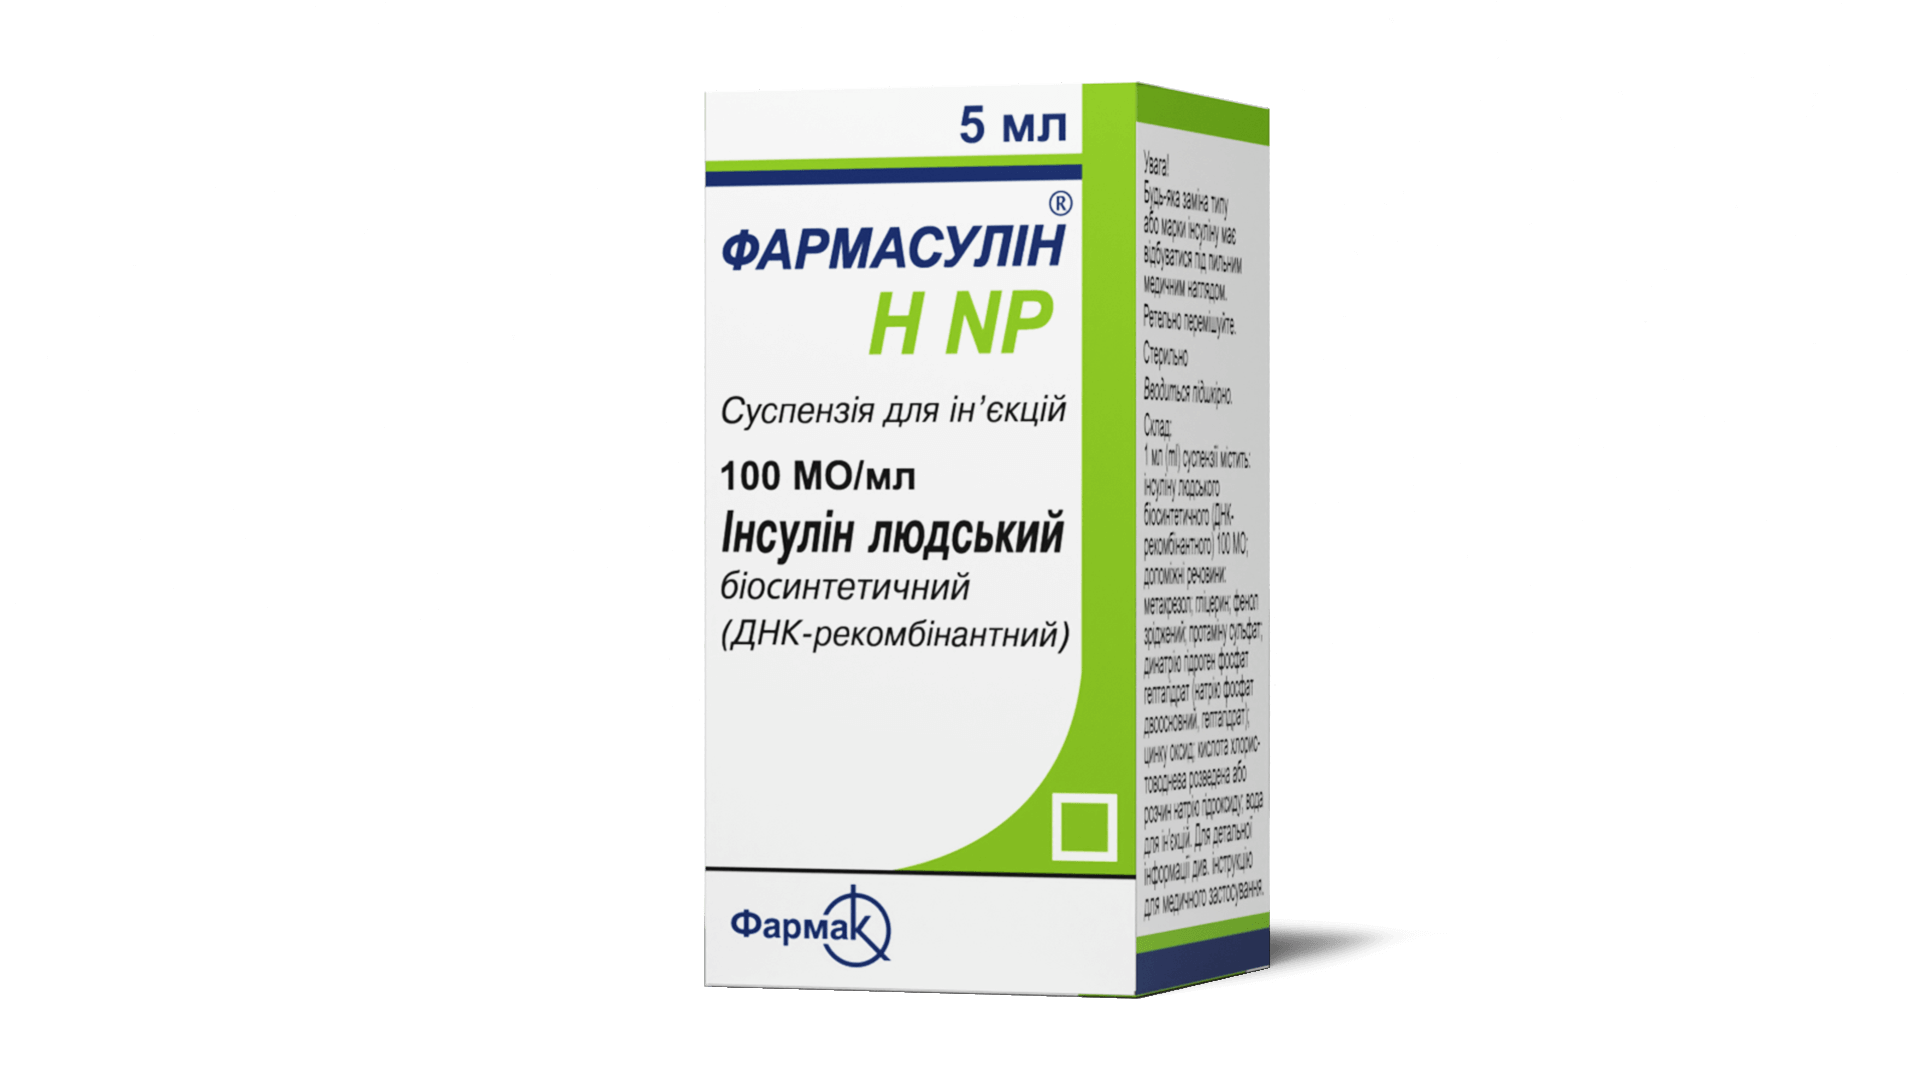 Фармасулин® Н NP (3)